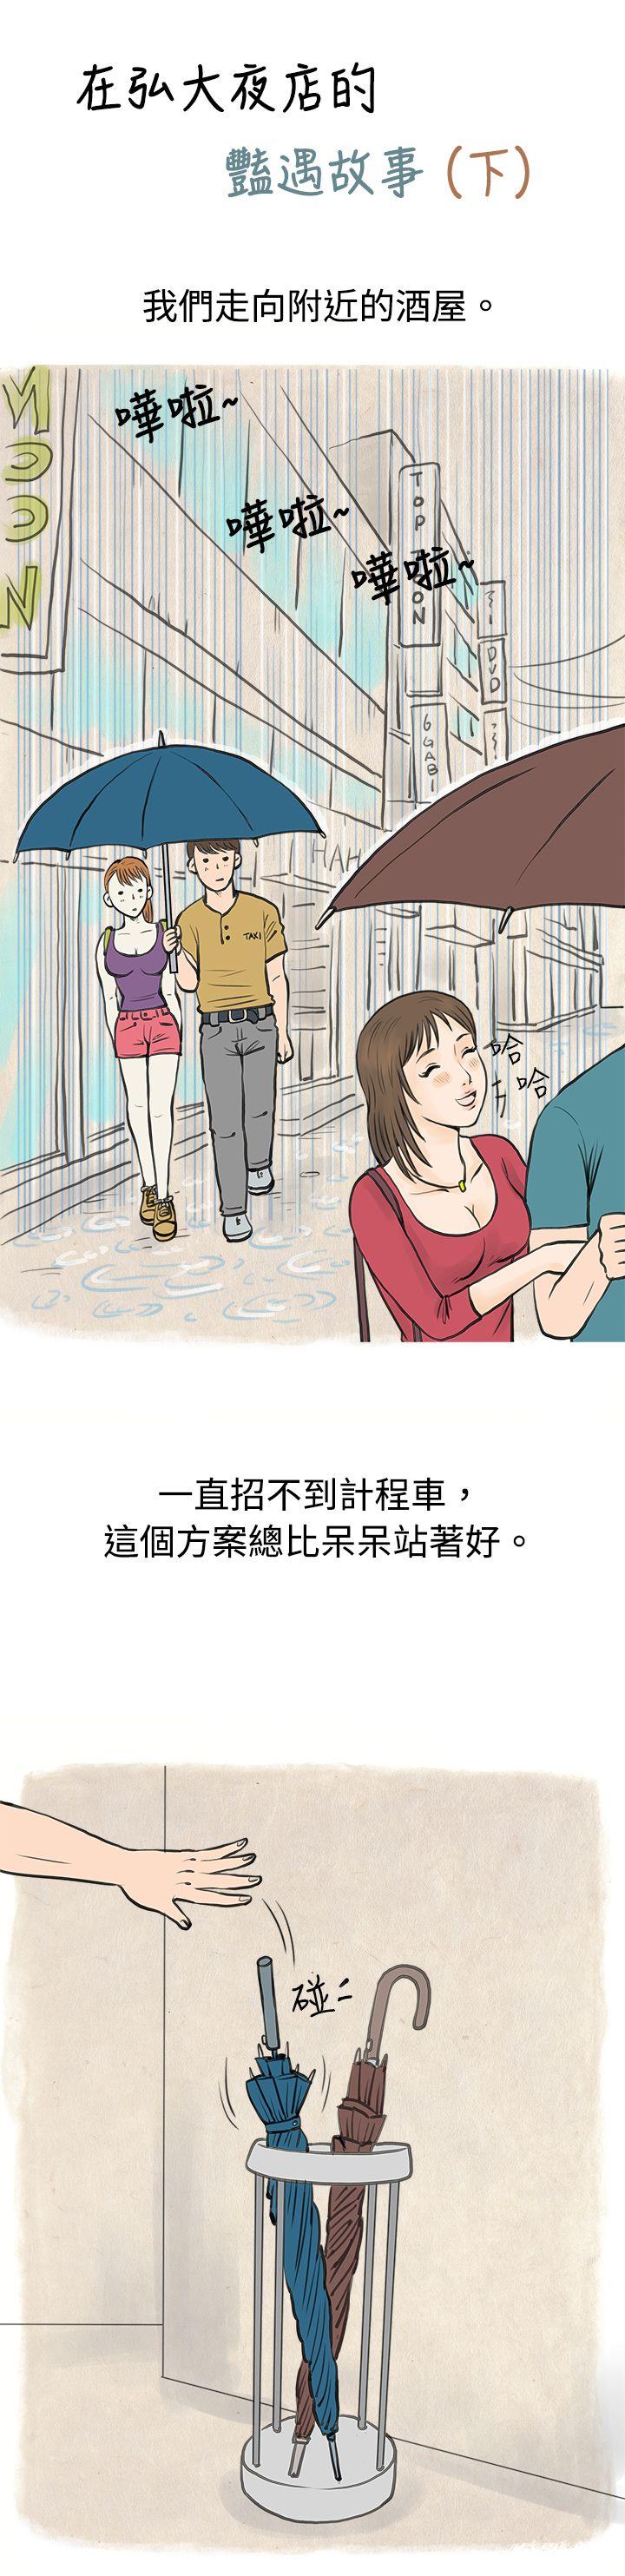 韩国污漫画 秘密Story 在弘大夜店的豔遇故事(下) 1